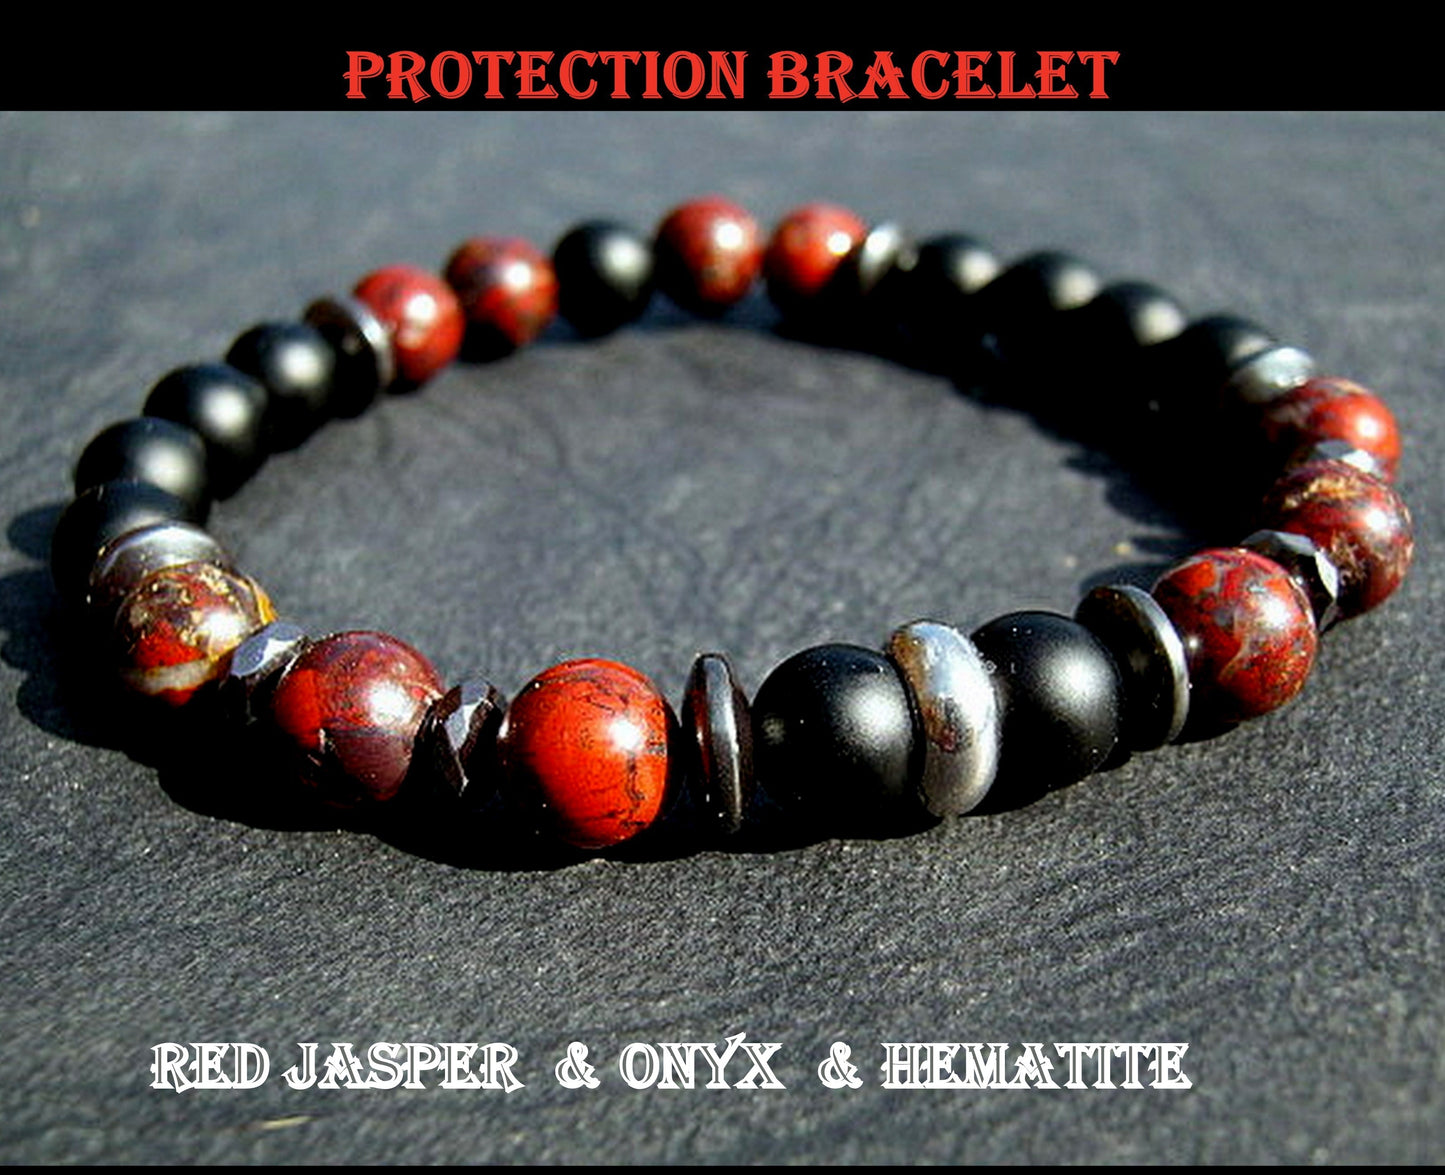 Camelys Magic 4 Men - Men BRACELET Red JASPER Hematite Onyx Lava Prosperity protection Fertility Bracelet.Healing stone, handmade bracelet men gift